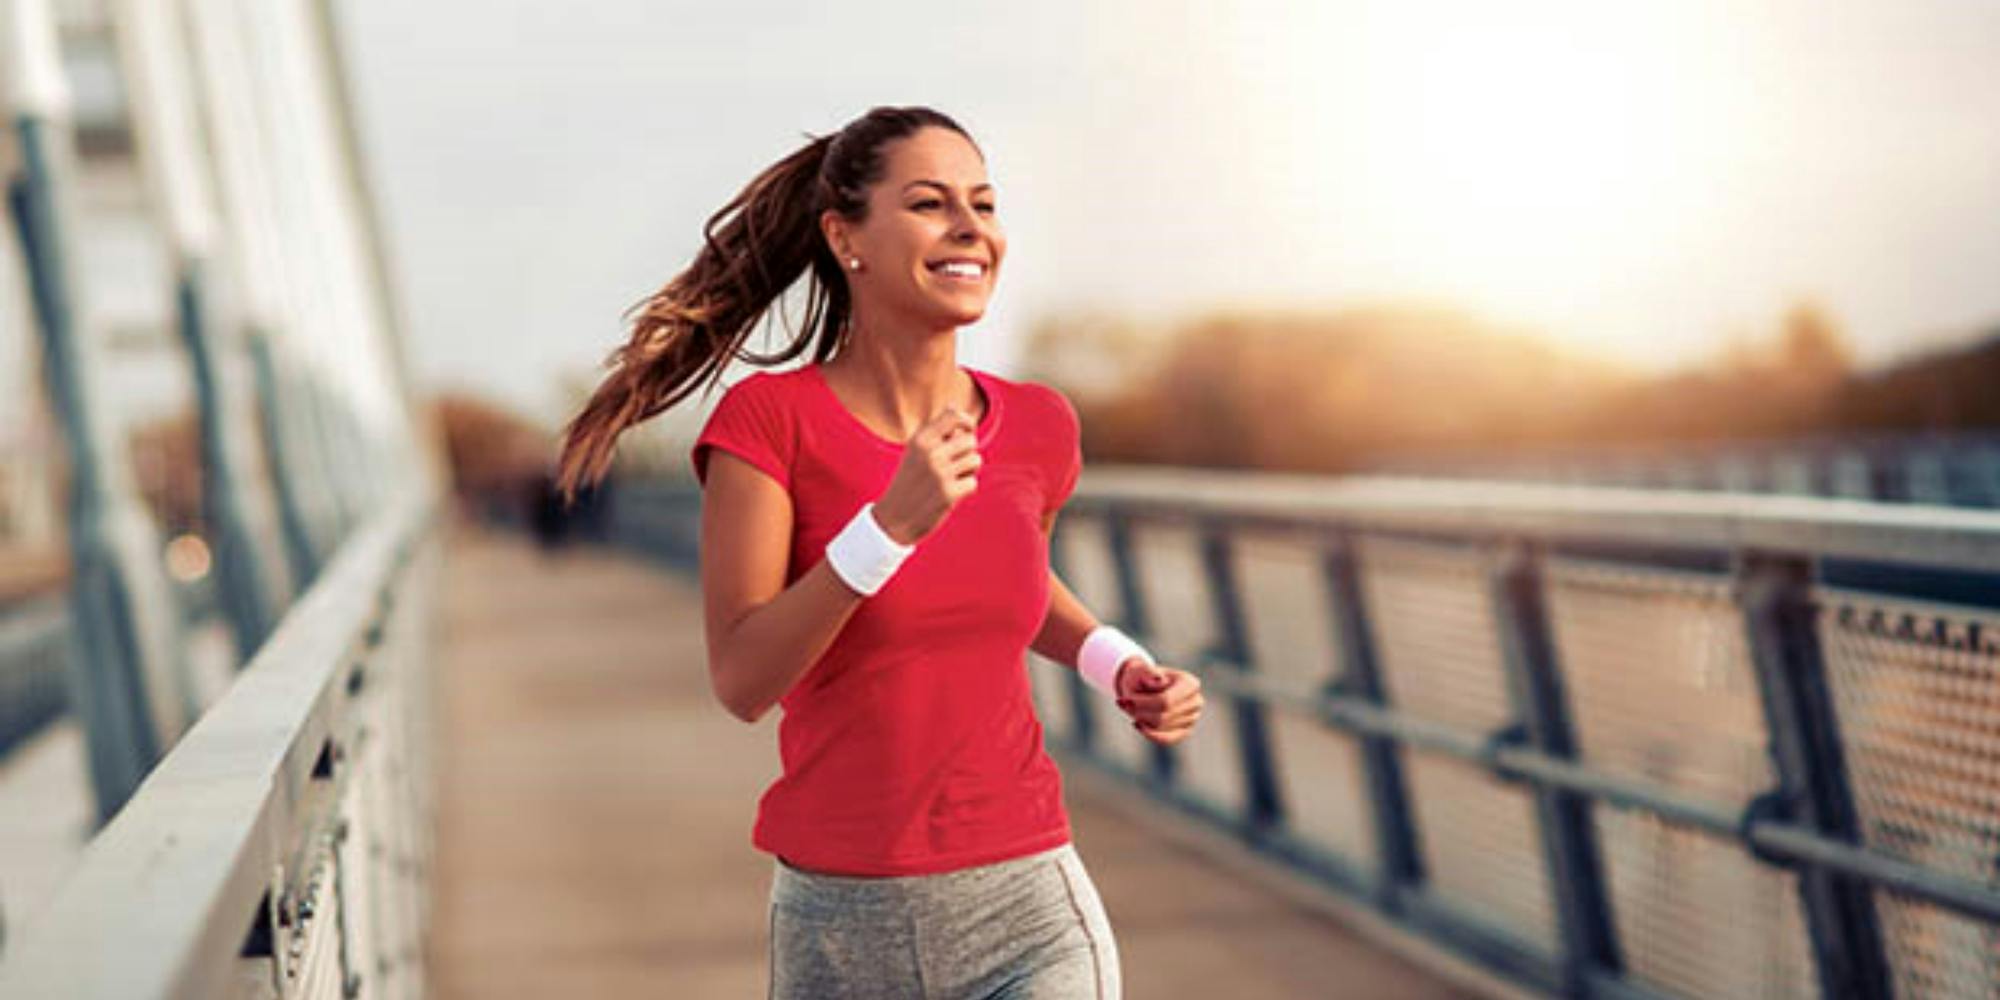 Τρέξιμο: Ασφαλές, αποτελεσματικό και δωρεάν… αντικαταθλιπτικό!